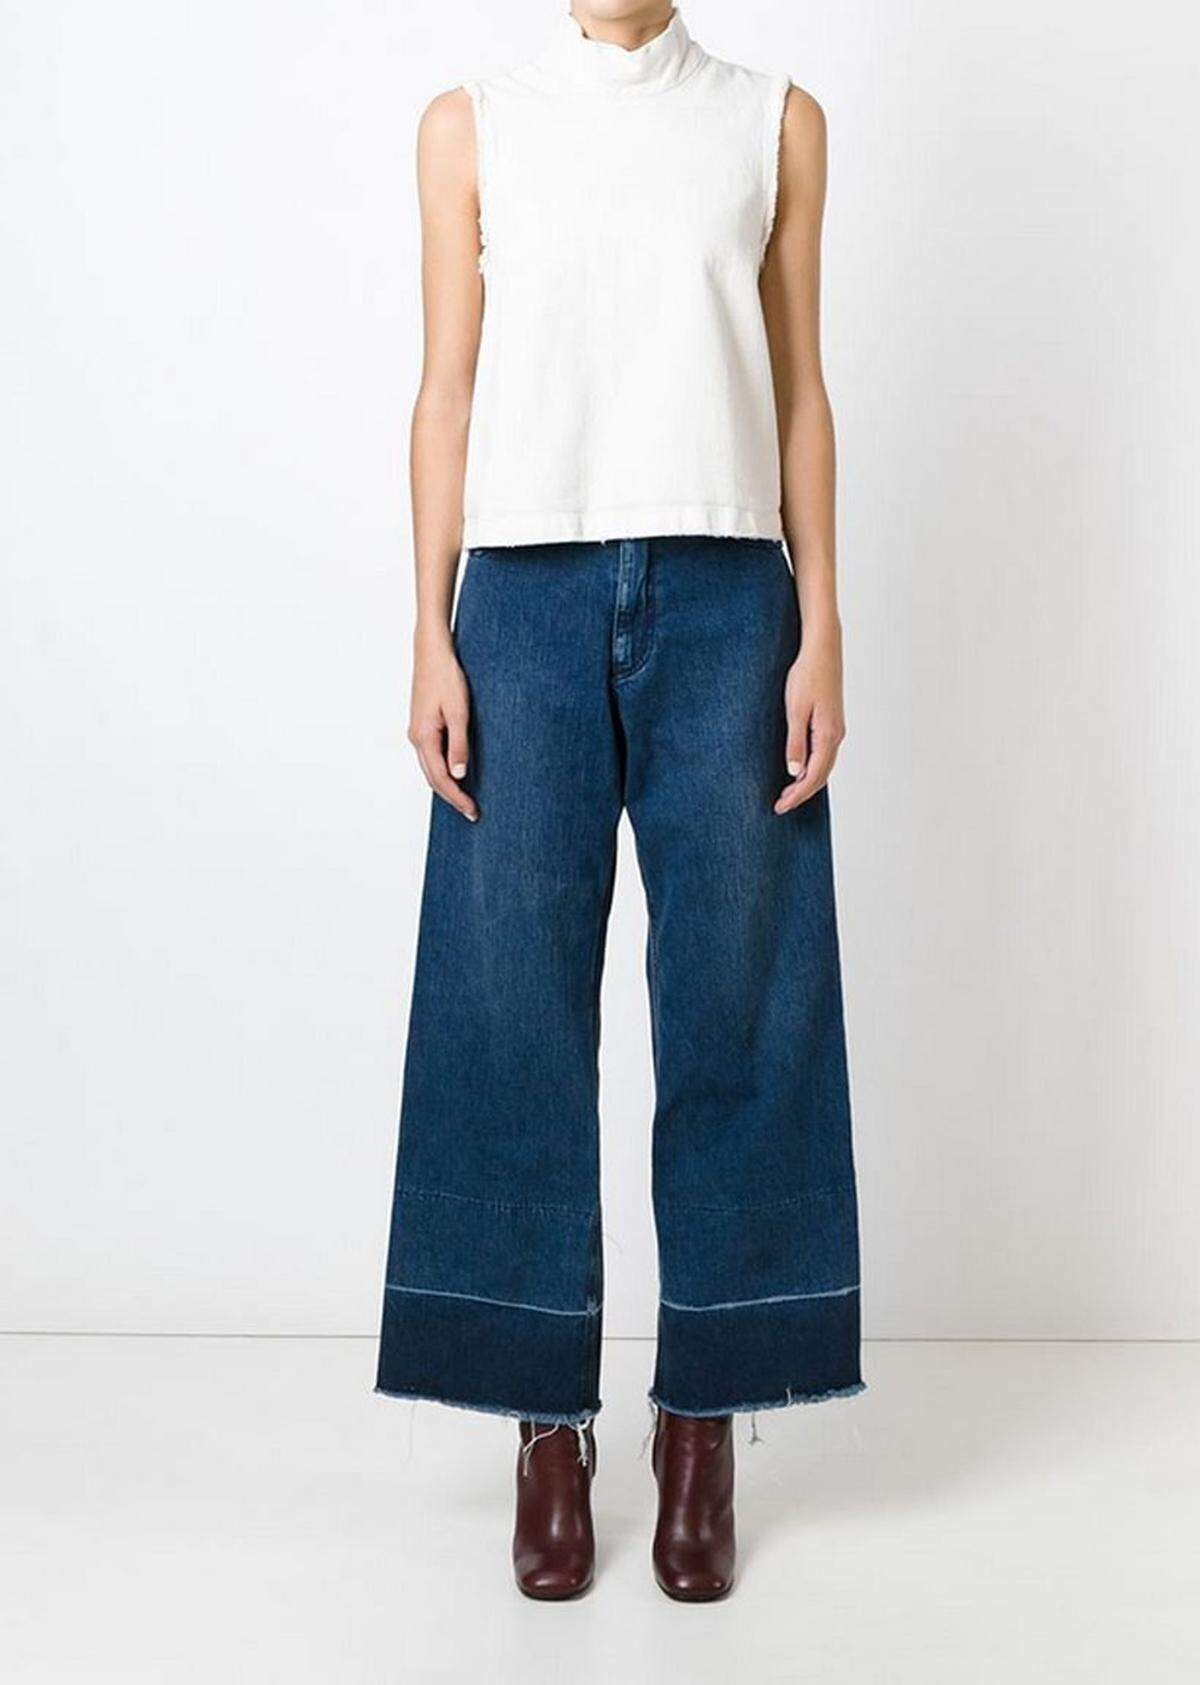 Mit der Legion Jeans von Rachel Comey deckten sich modeinteressierte Frauen im Oktober ein.